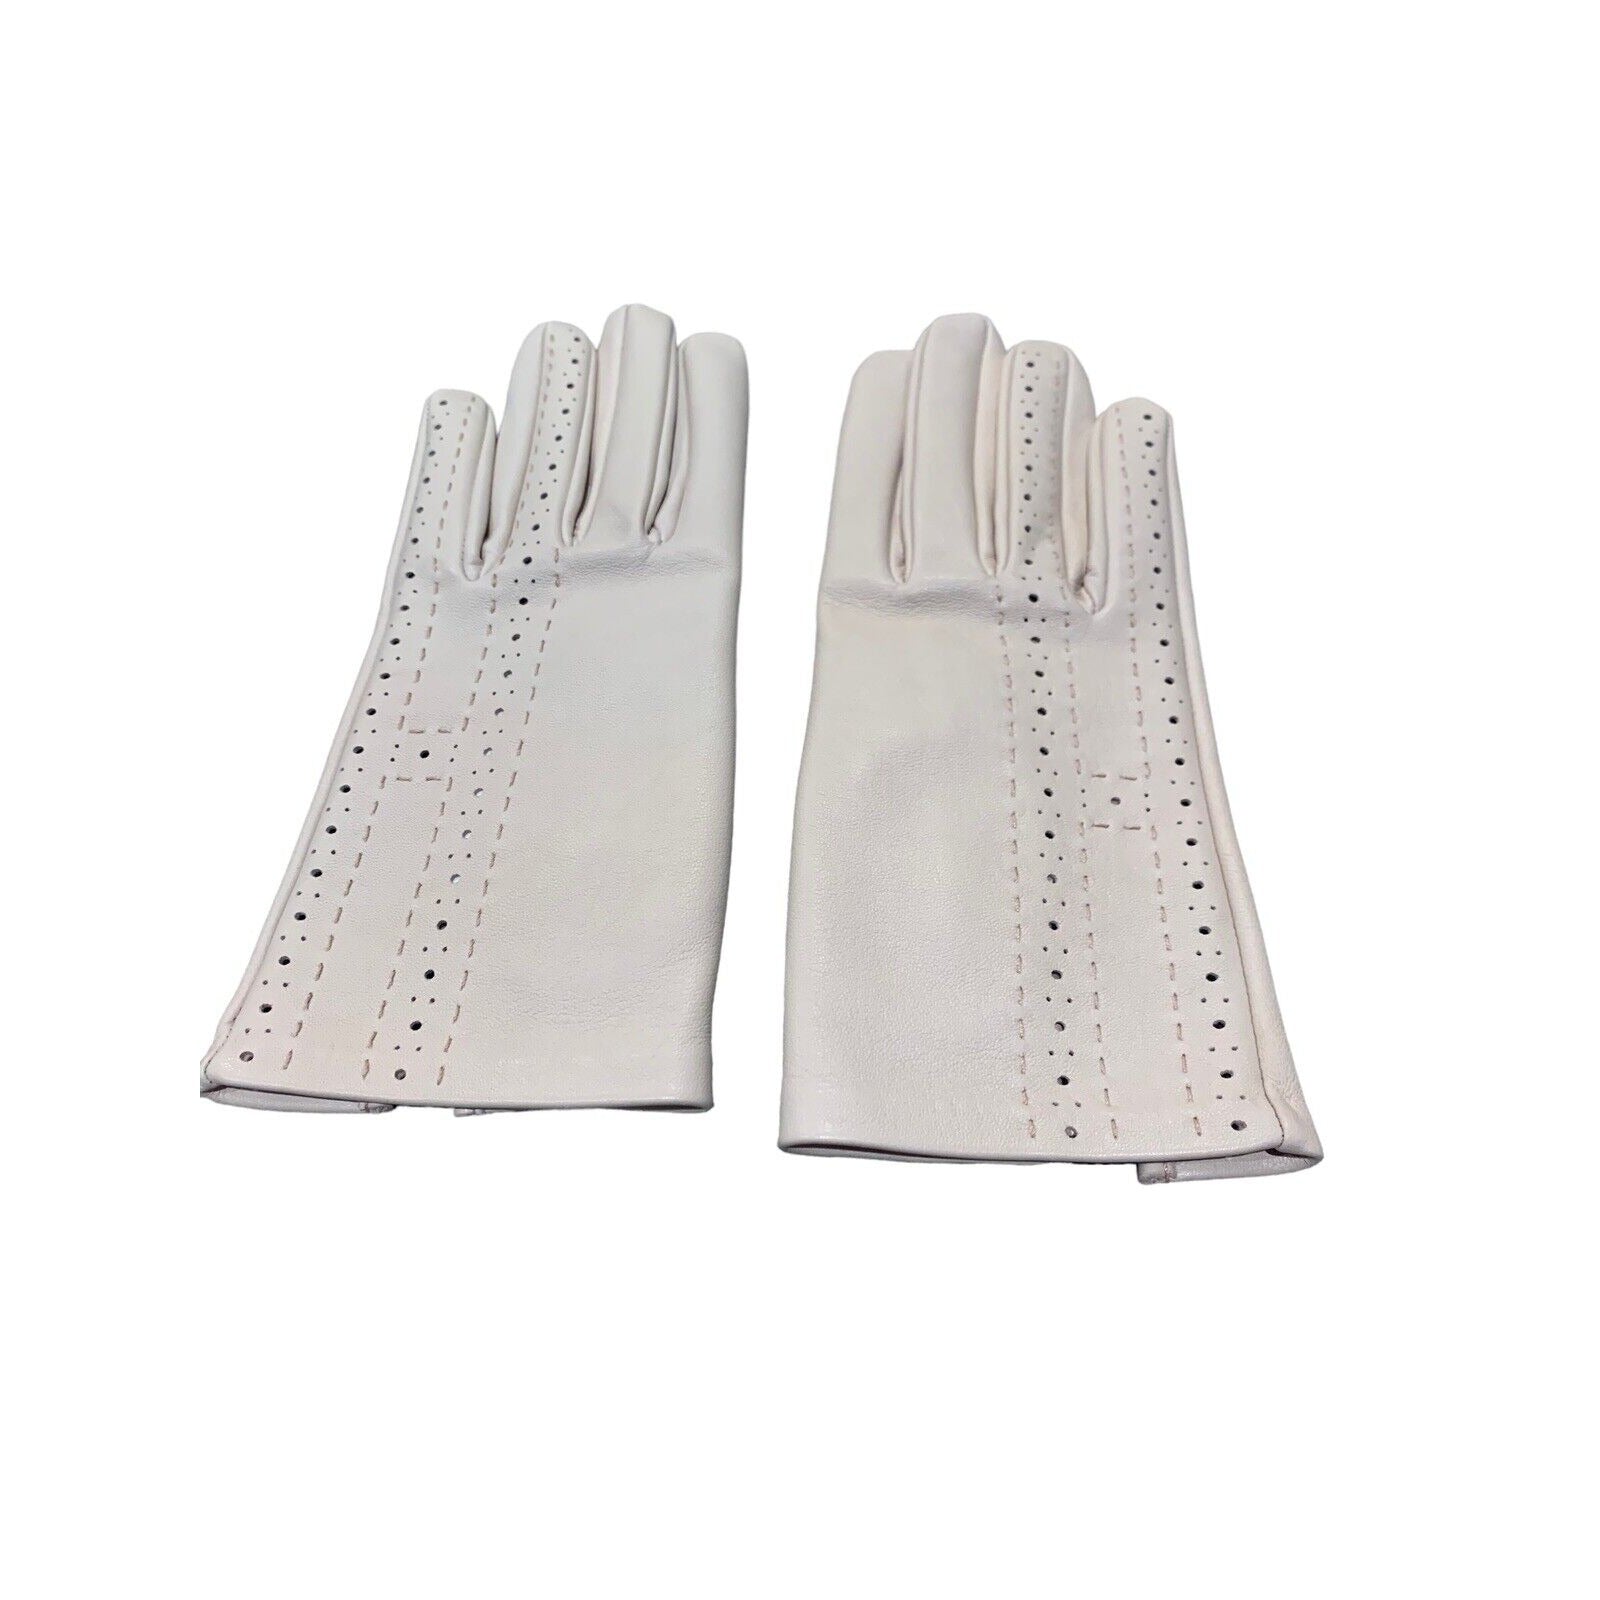 Lambskin Leather Gloves